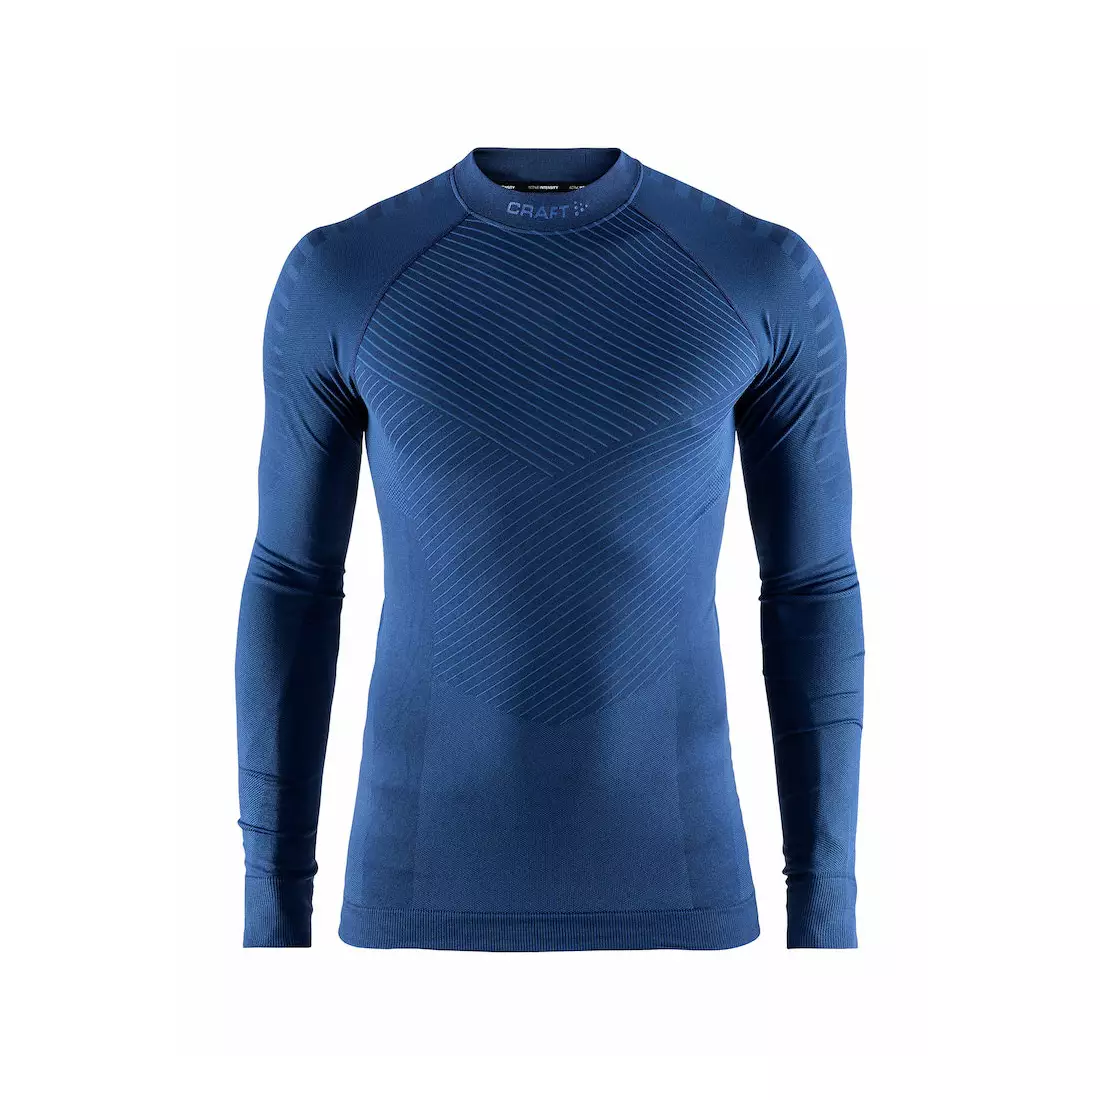 CRAFT ACTIVE INTENSITY - pánské tričko, termoprádlo, dlouhý rukáv 1905337-391000